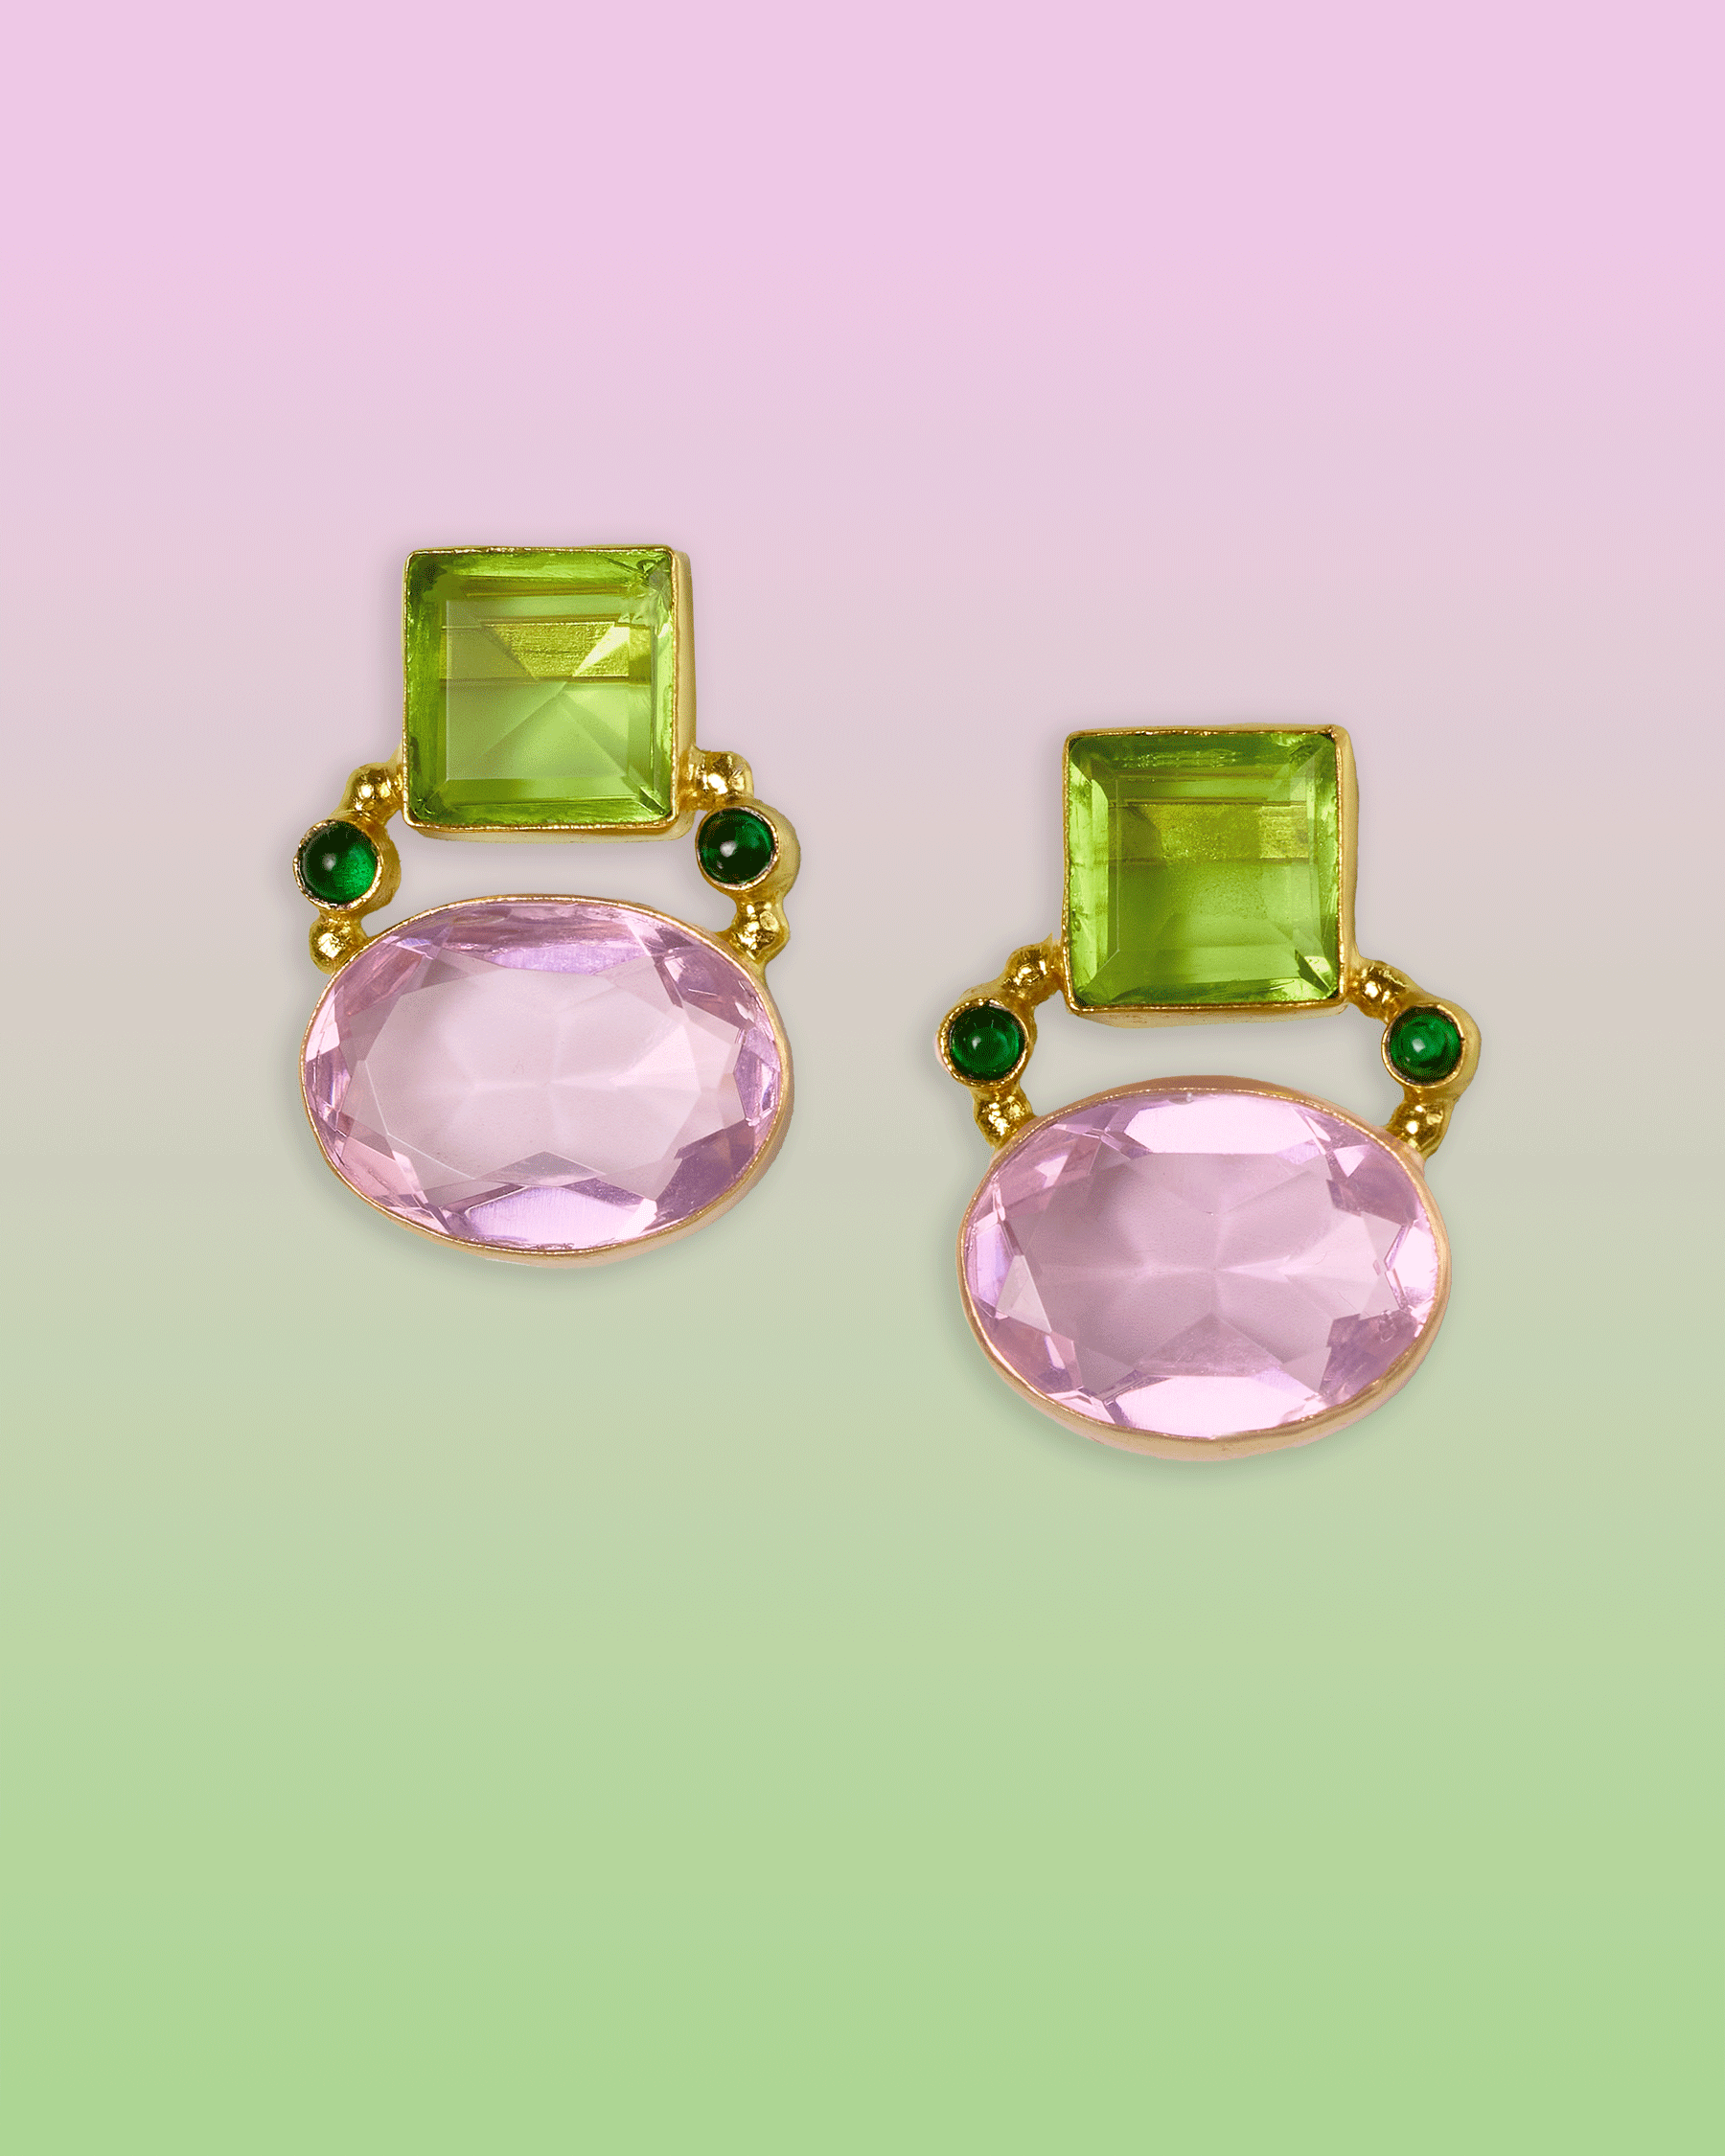 Berkley Geometric Earrings in Pink and Lime